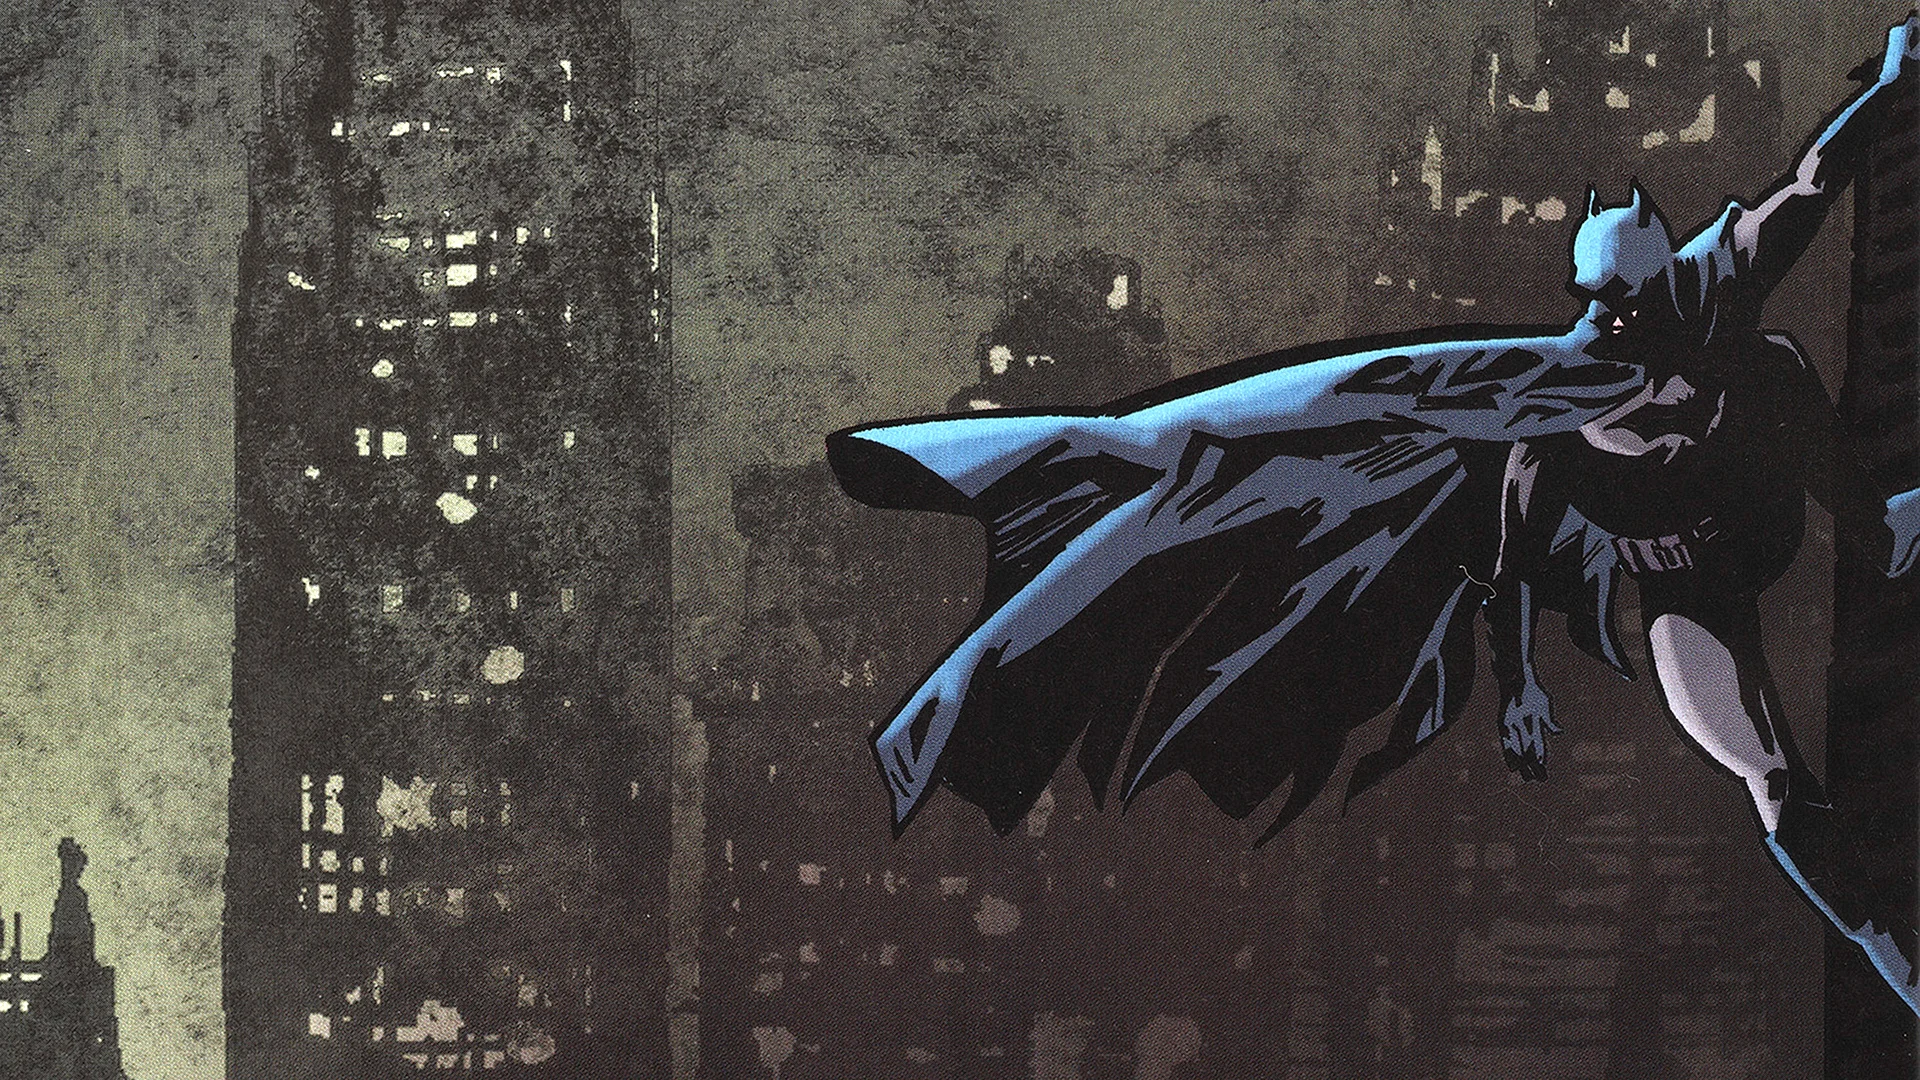 Batman Art Wallpaper